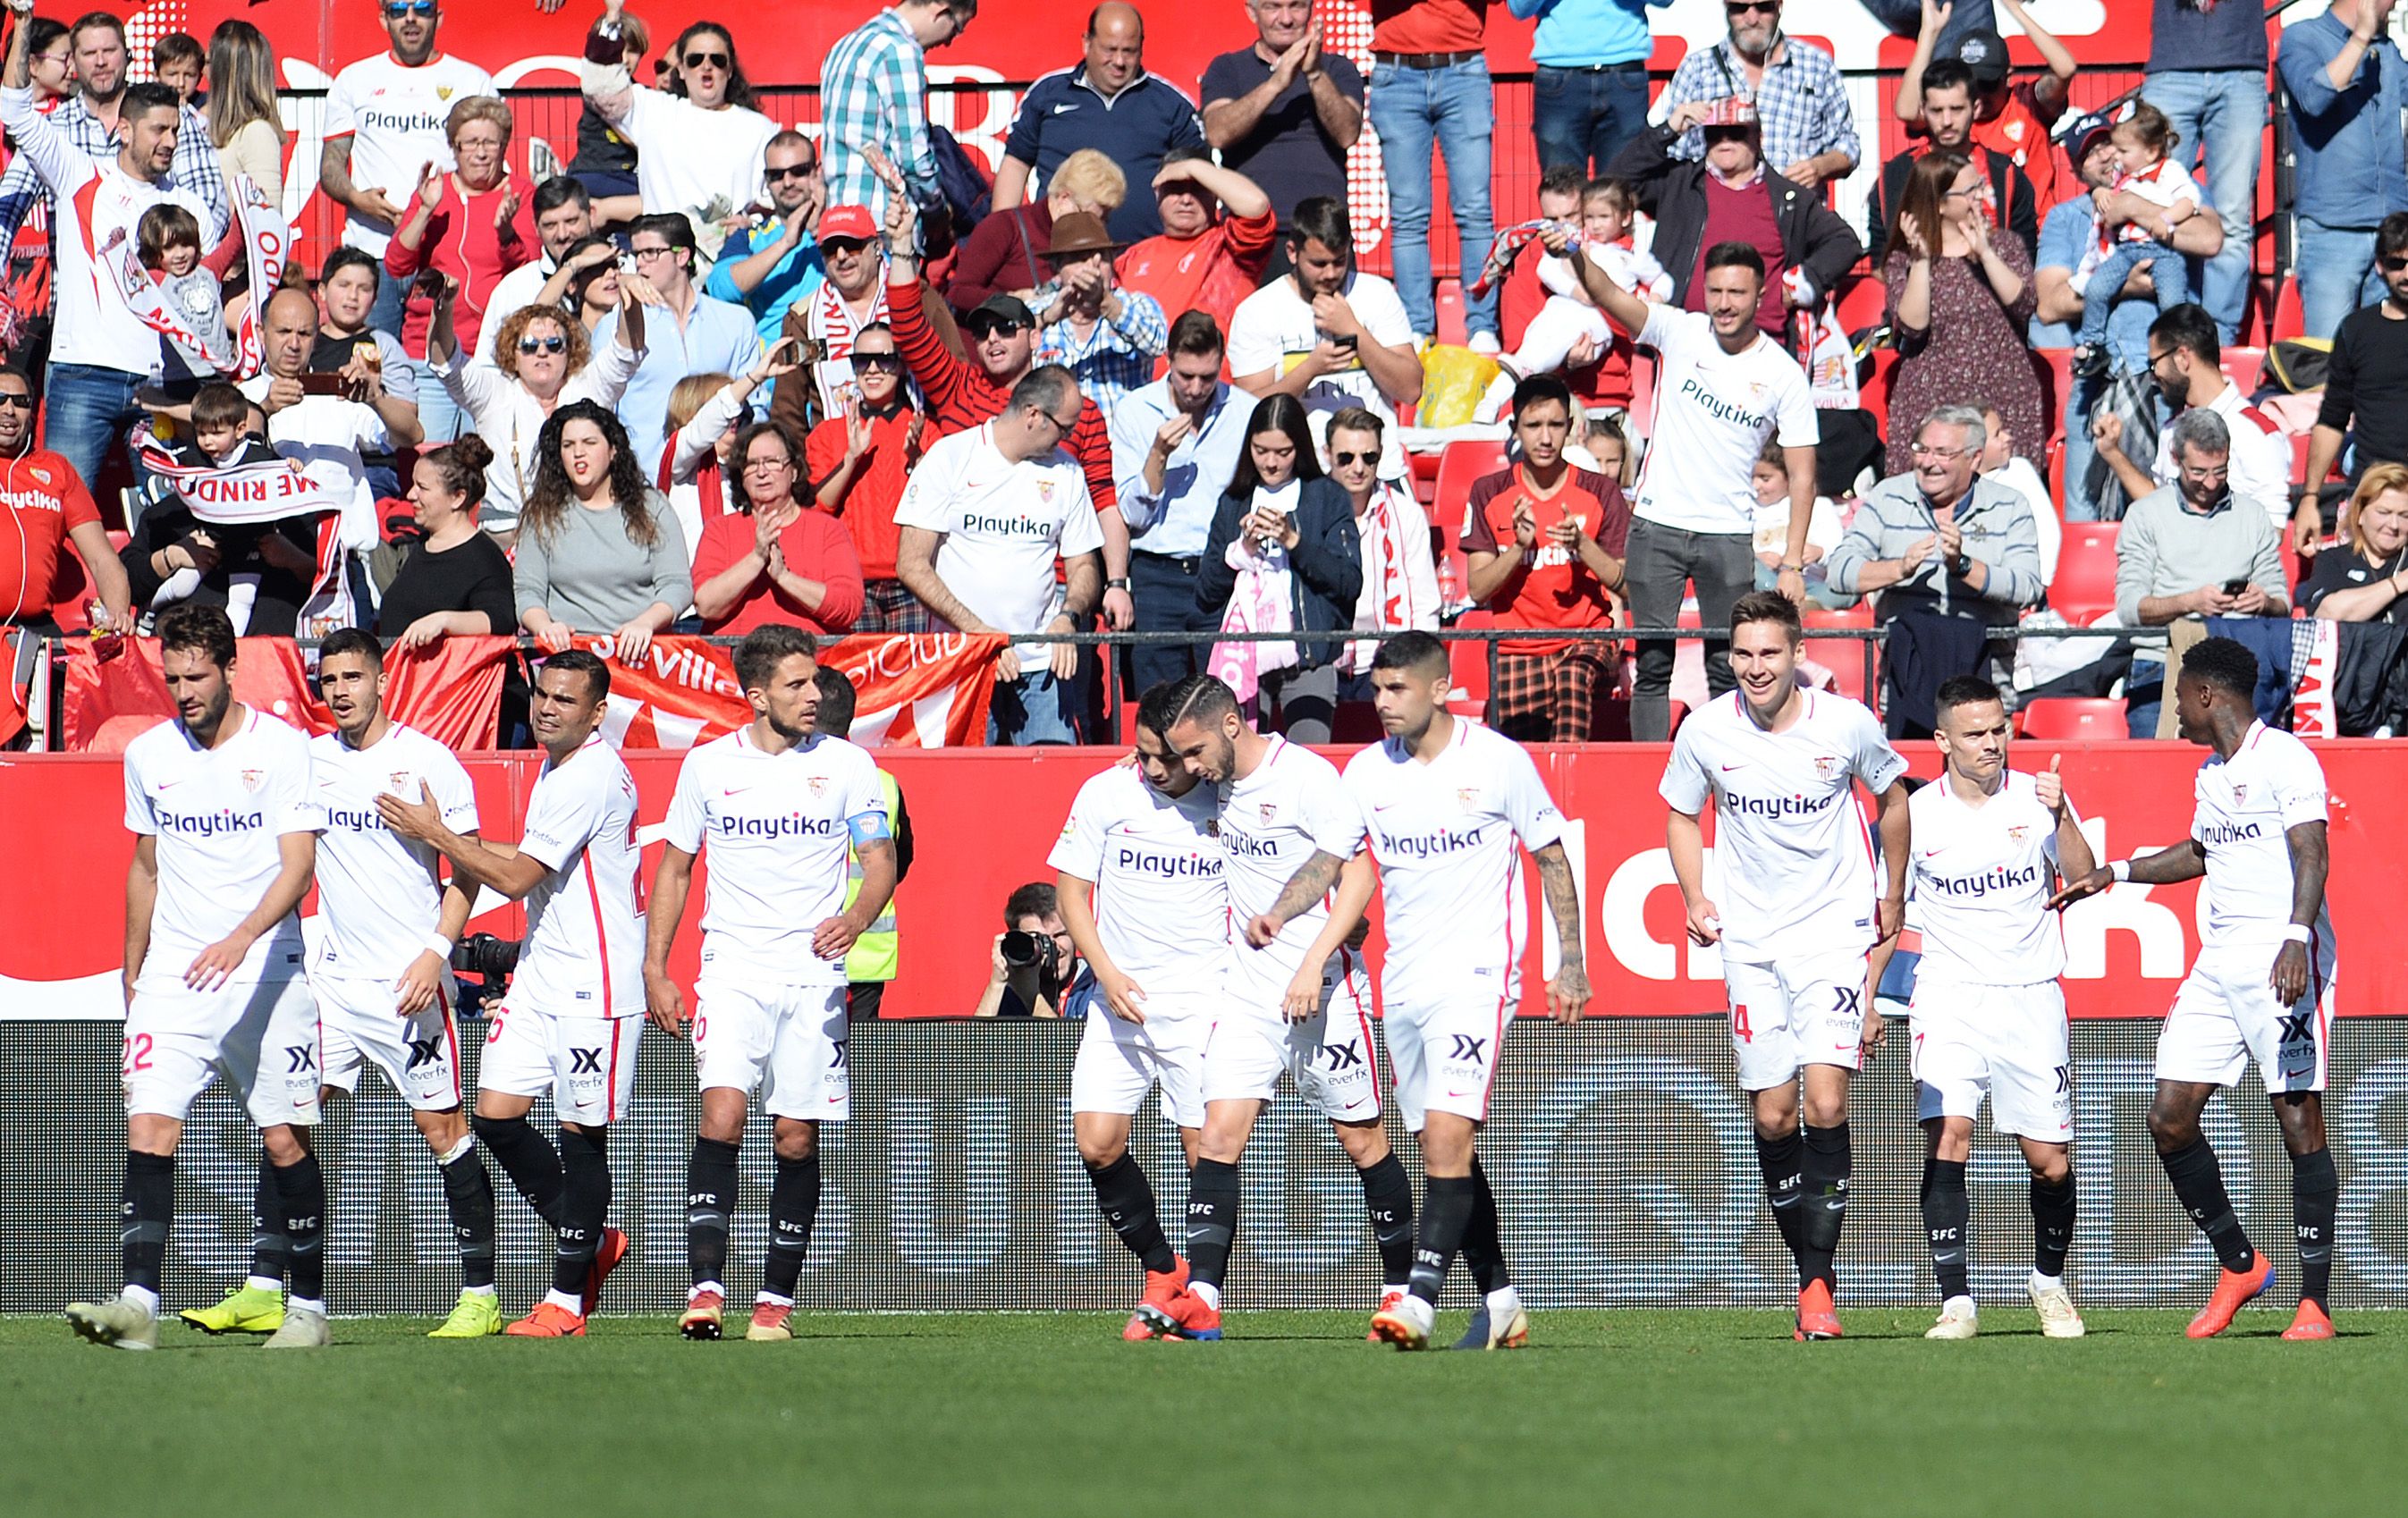 Los jugadores del Sevilla tuvieron un partido soñado. (Foto Prensa Libre: AFP)